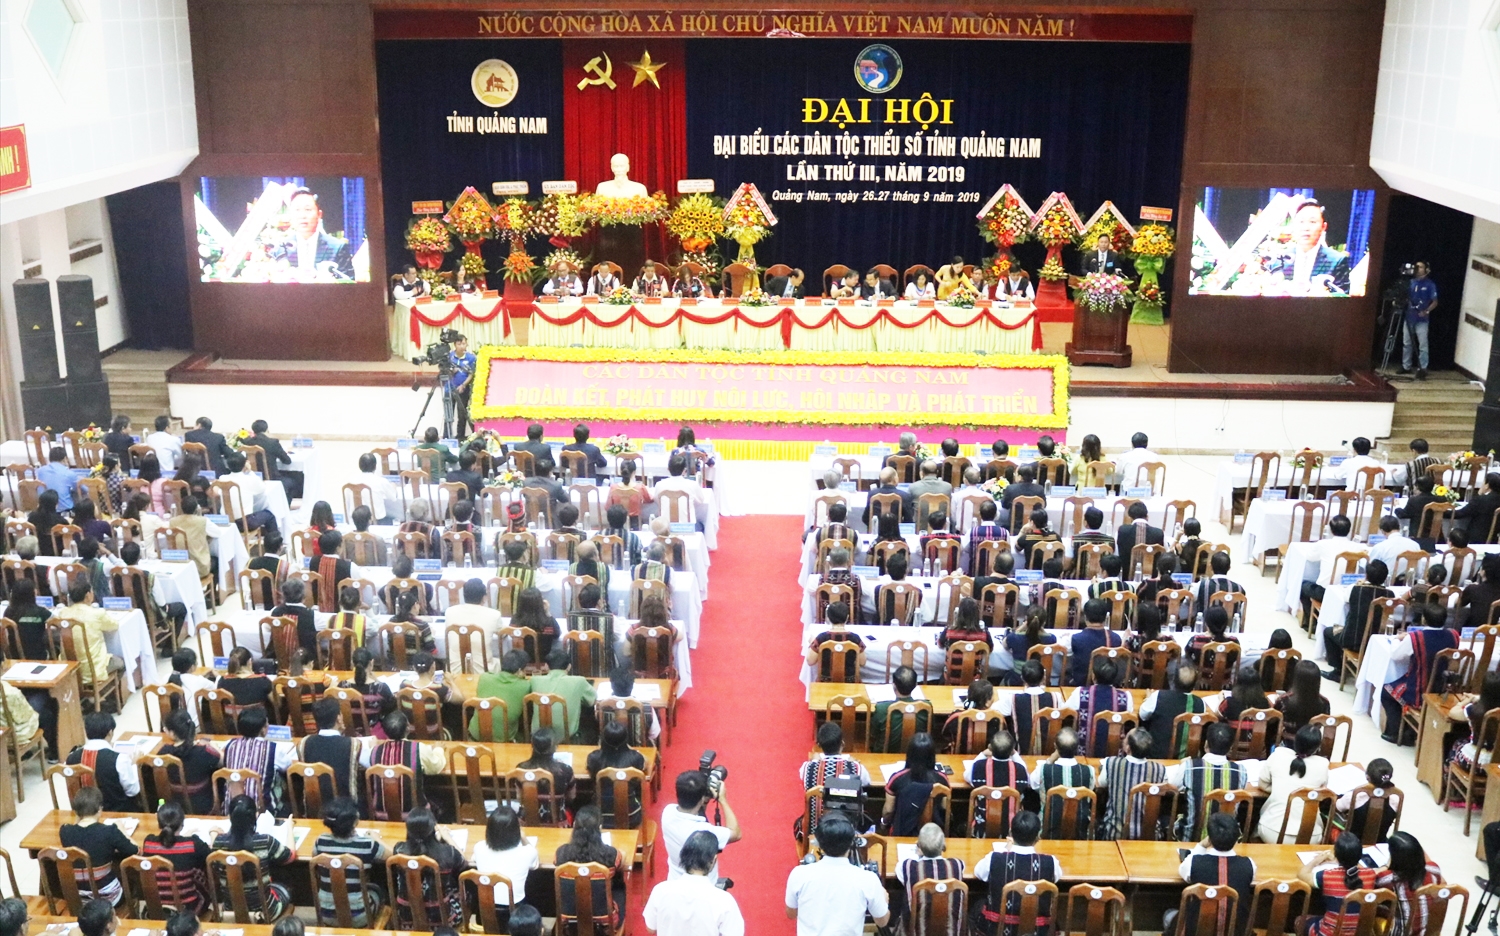 Đại hội đại biểu các DTTS tỉnh Quảng Nam lần thứ III năm 2019 được tổ chức trang trọng